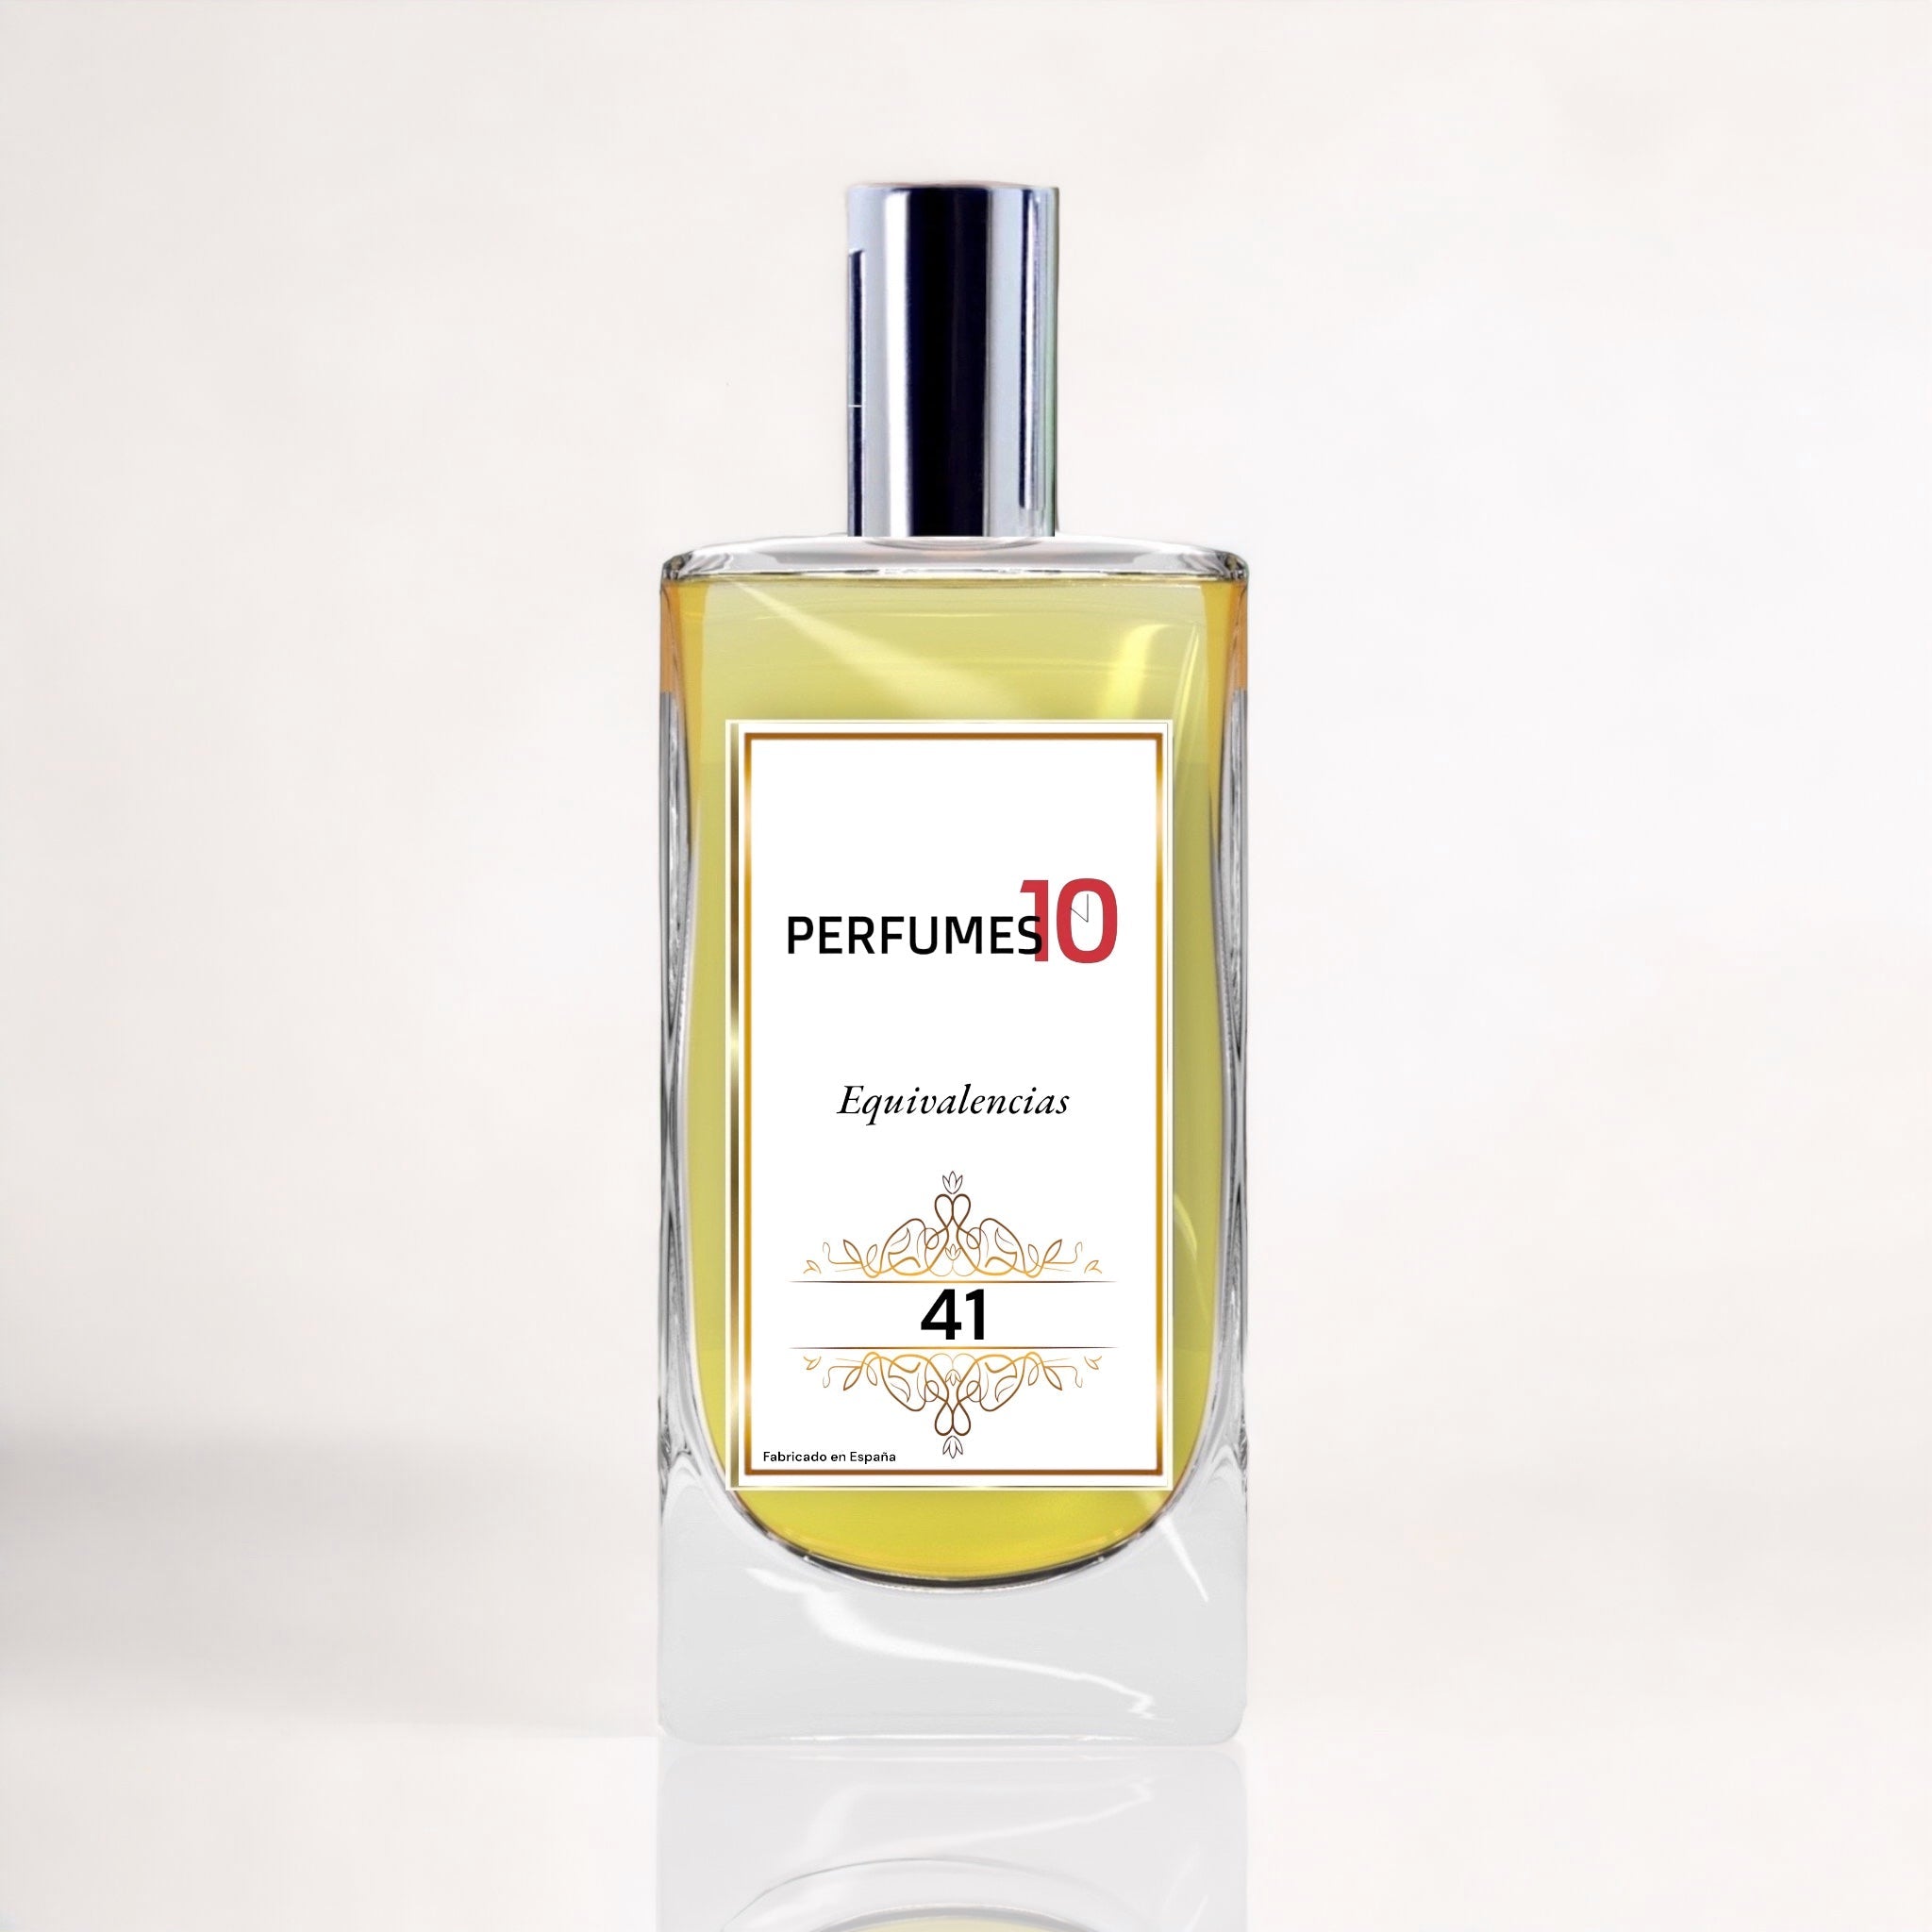 Perfume de imitación Tous de Tous mujer – Perfumes10